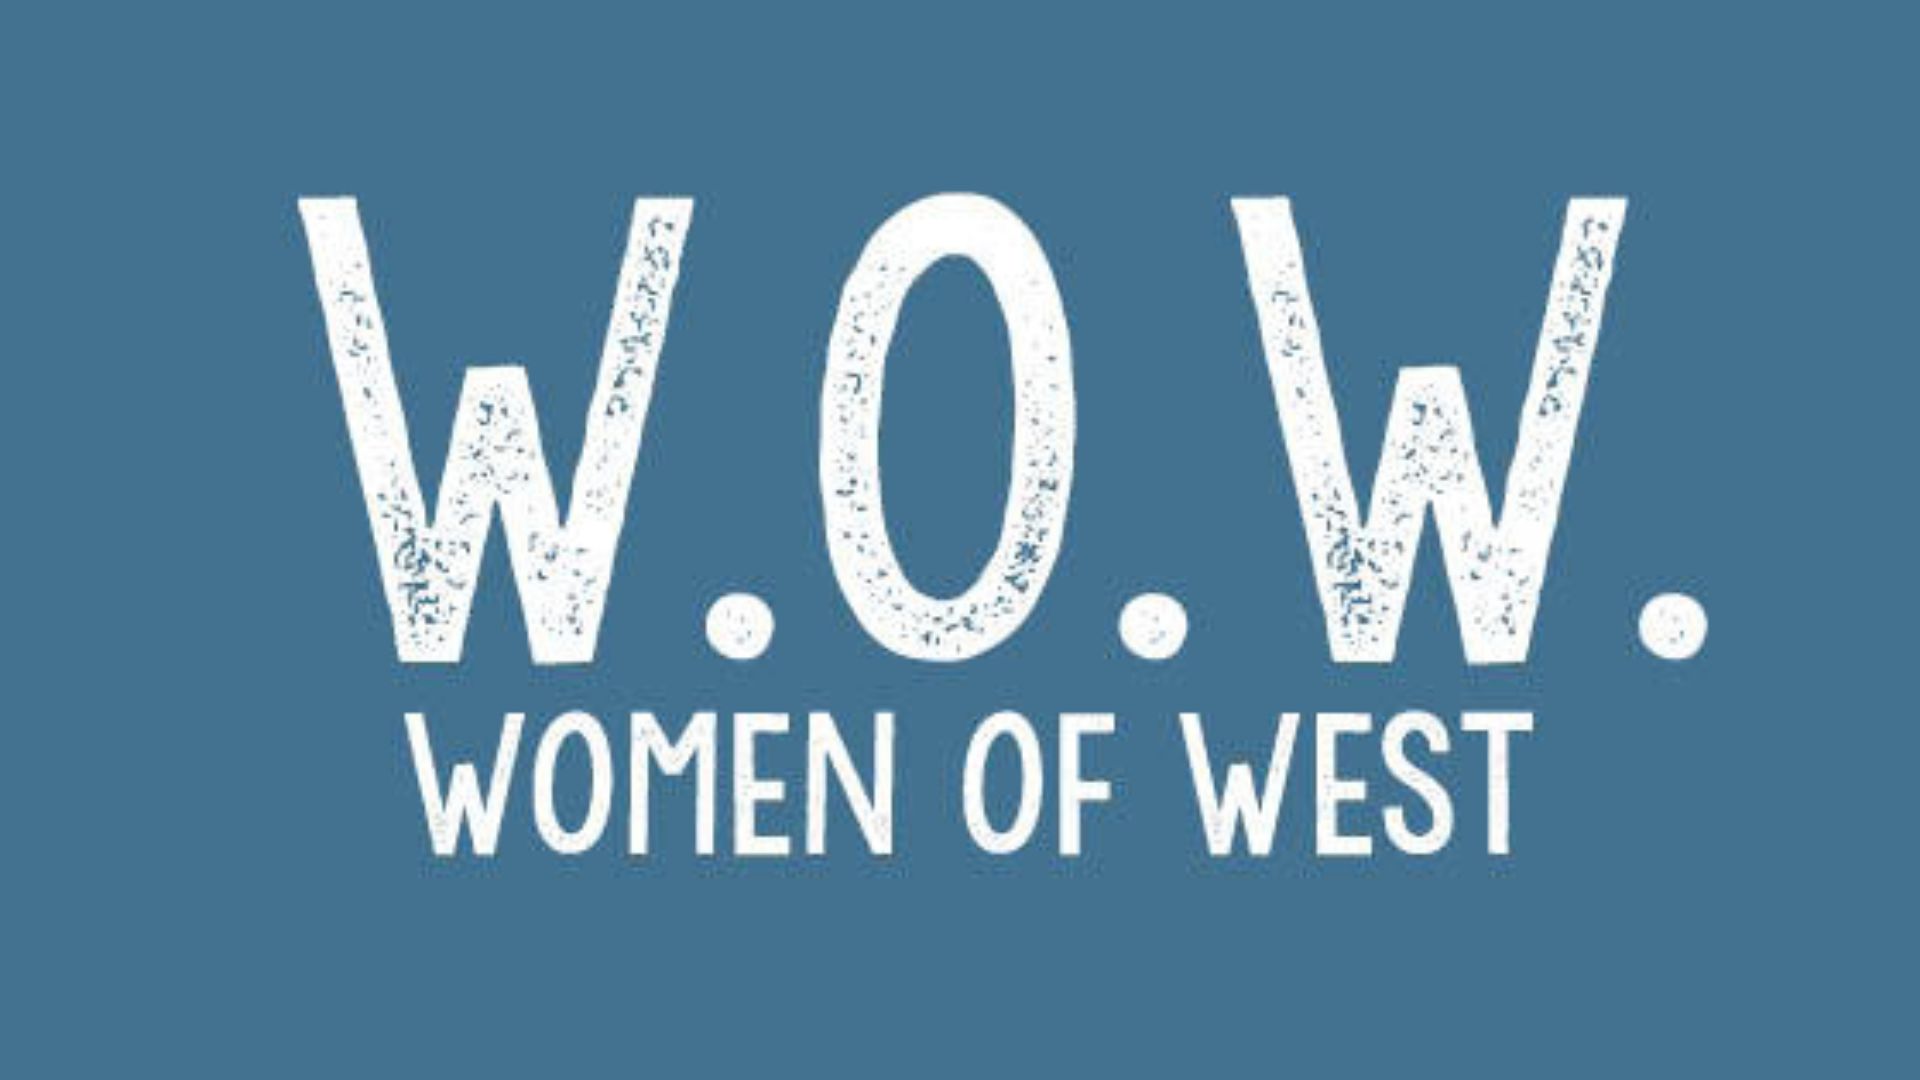 Women of West - 1920x1080